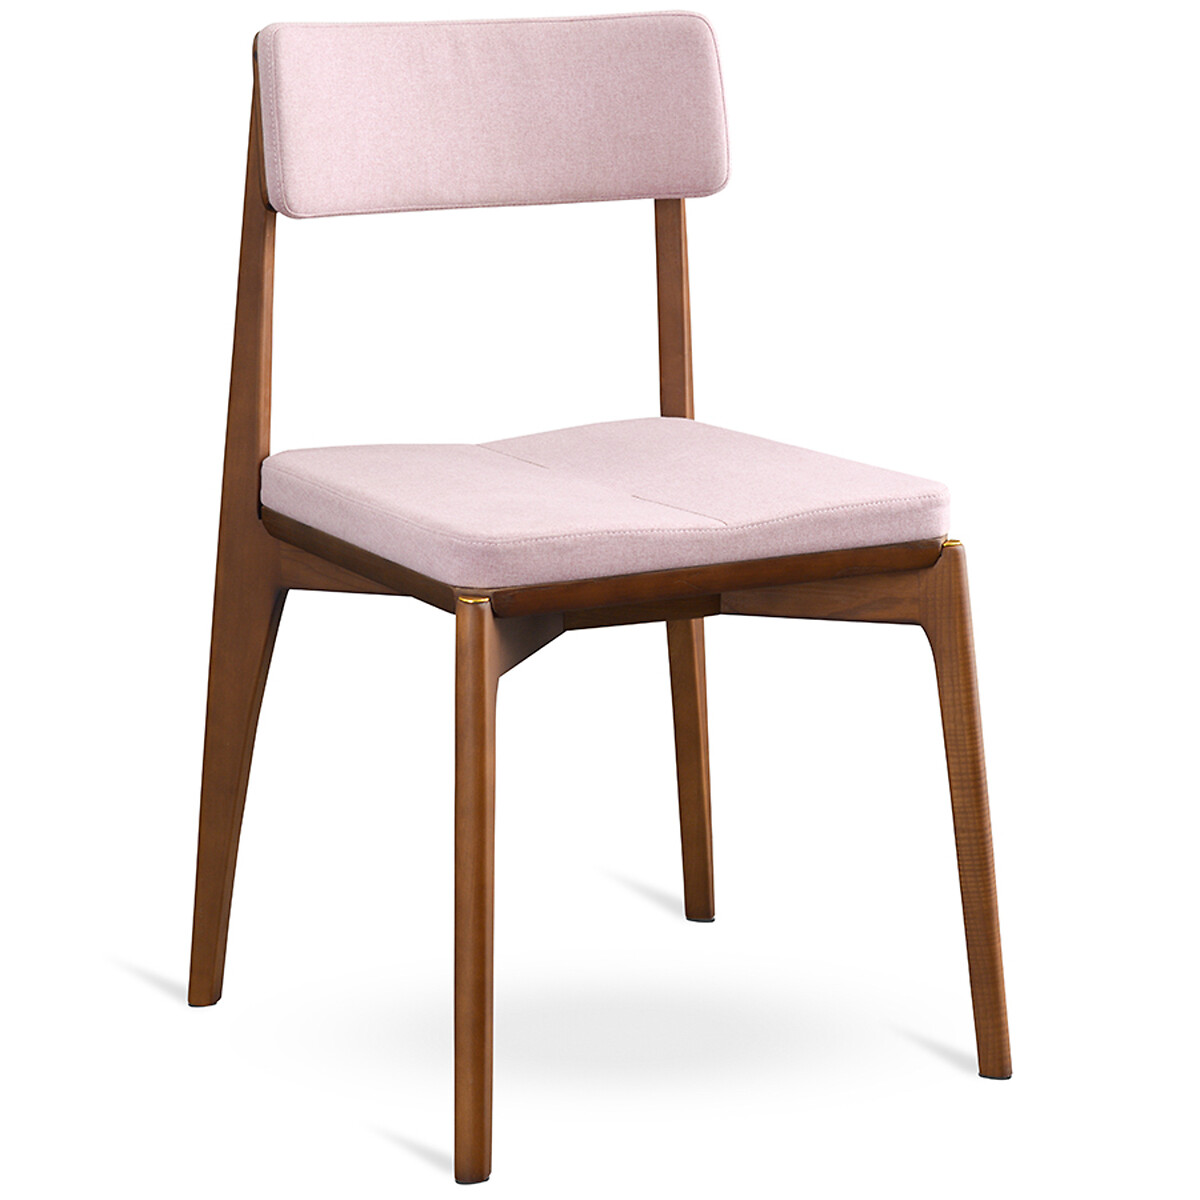 Стул Aska рогожка единый размер розовый стул eirill единый размер розовый